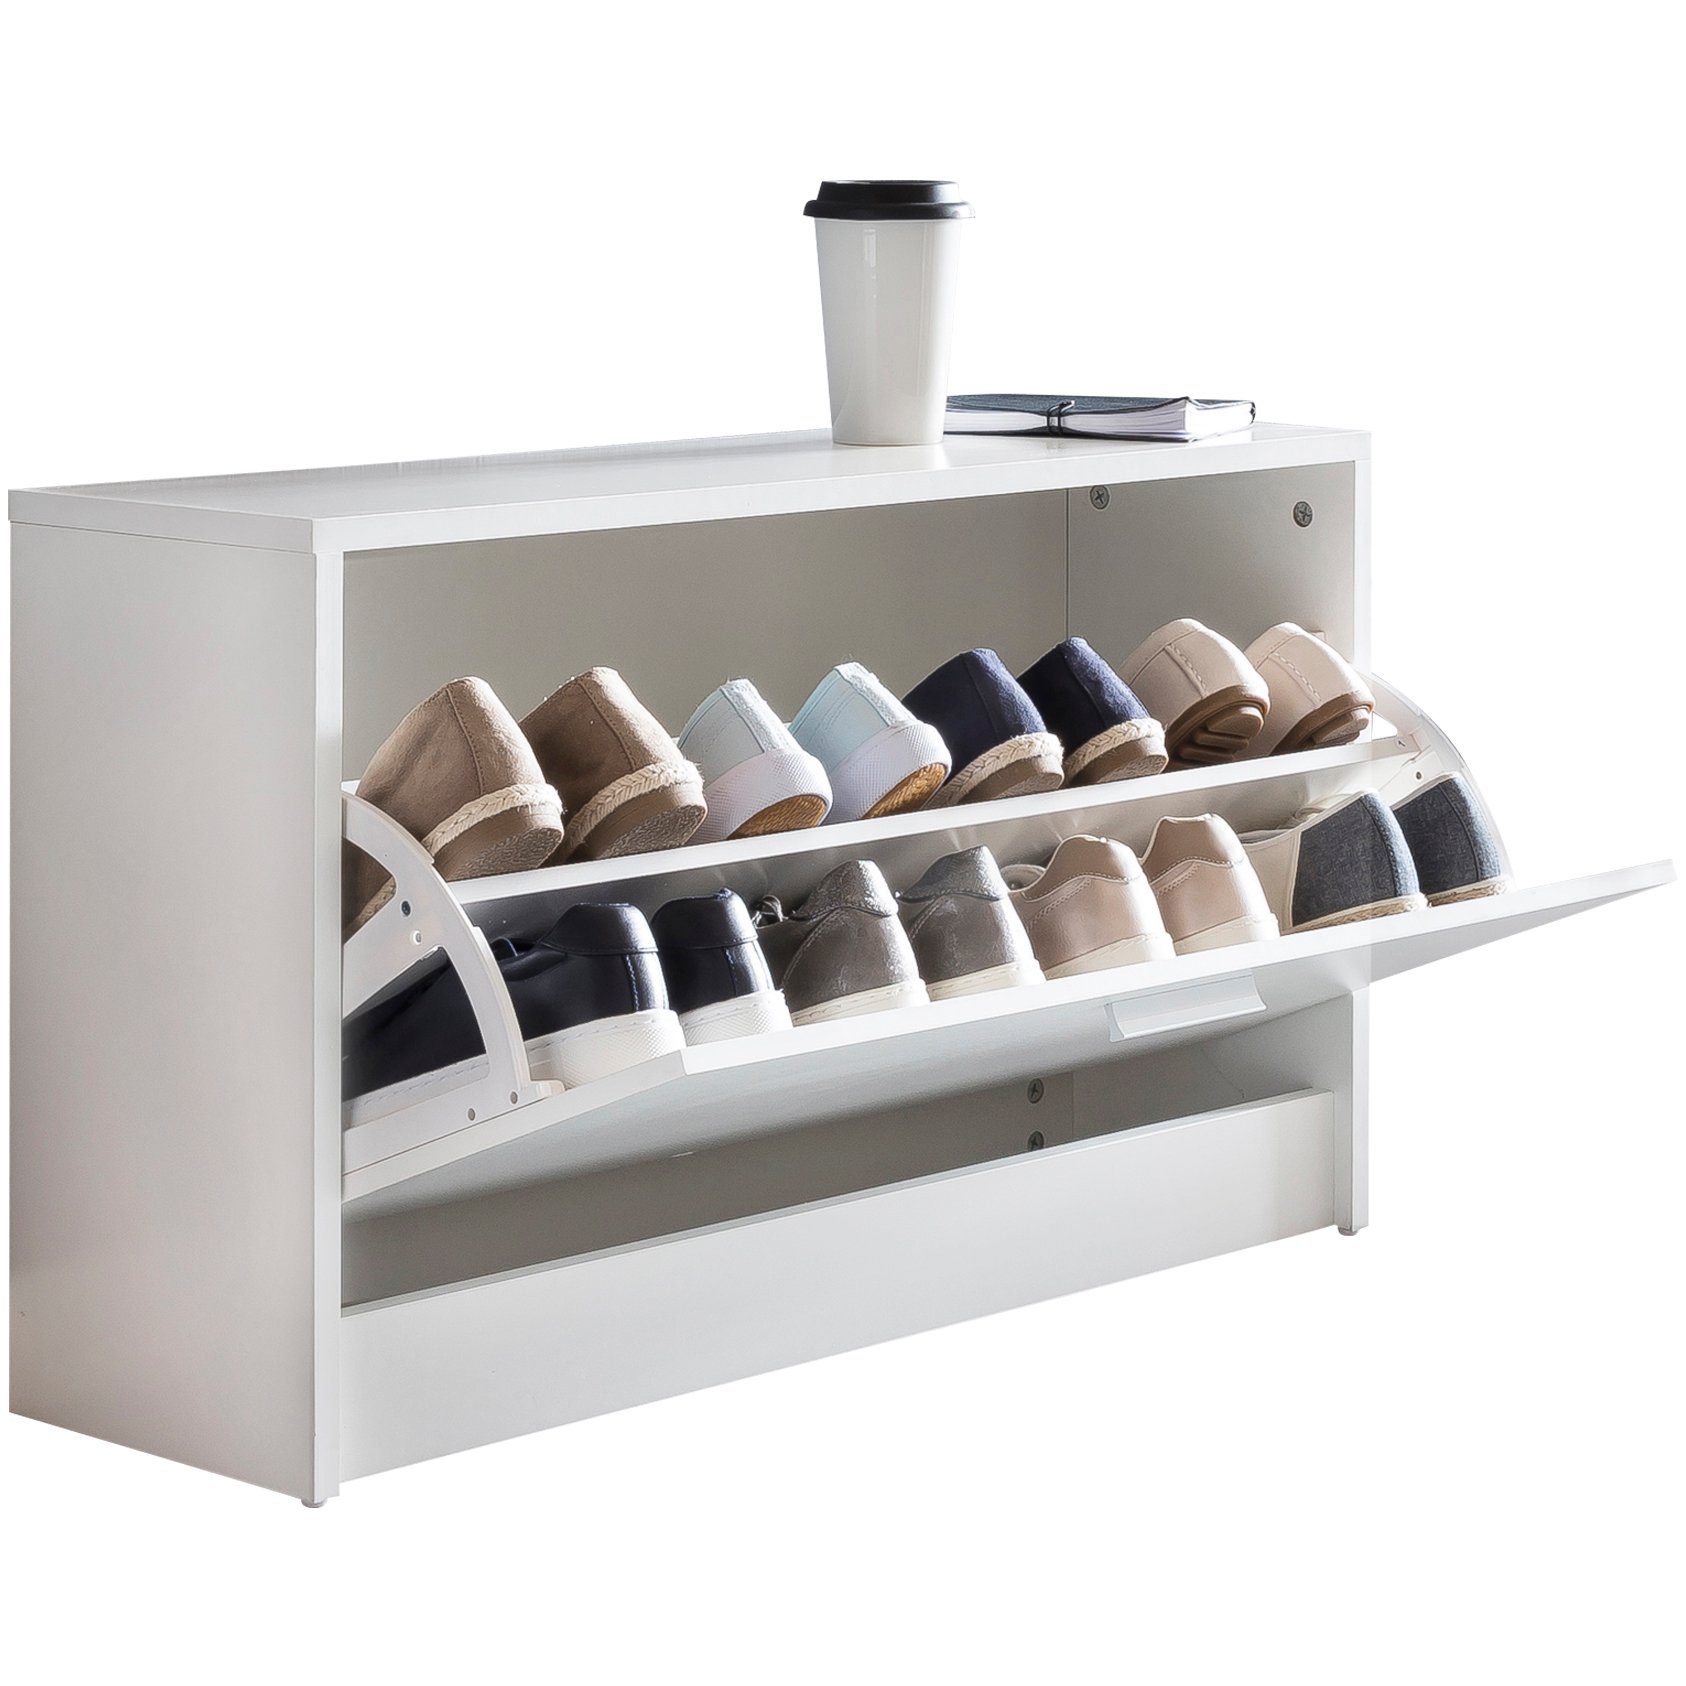 KADIMA DESIGN Schuhschrank Holz Schuhkipper Bank mit Ablagefach & 2 Unterfächern Weiß